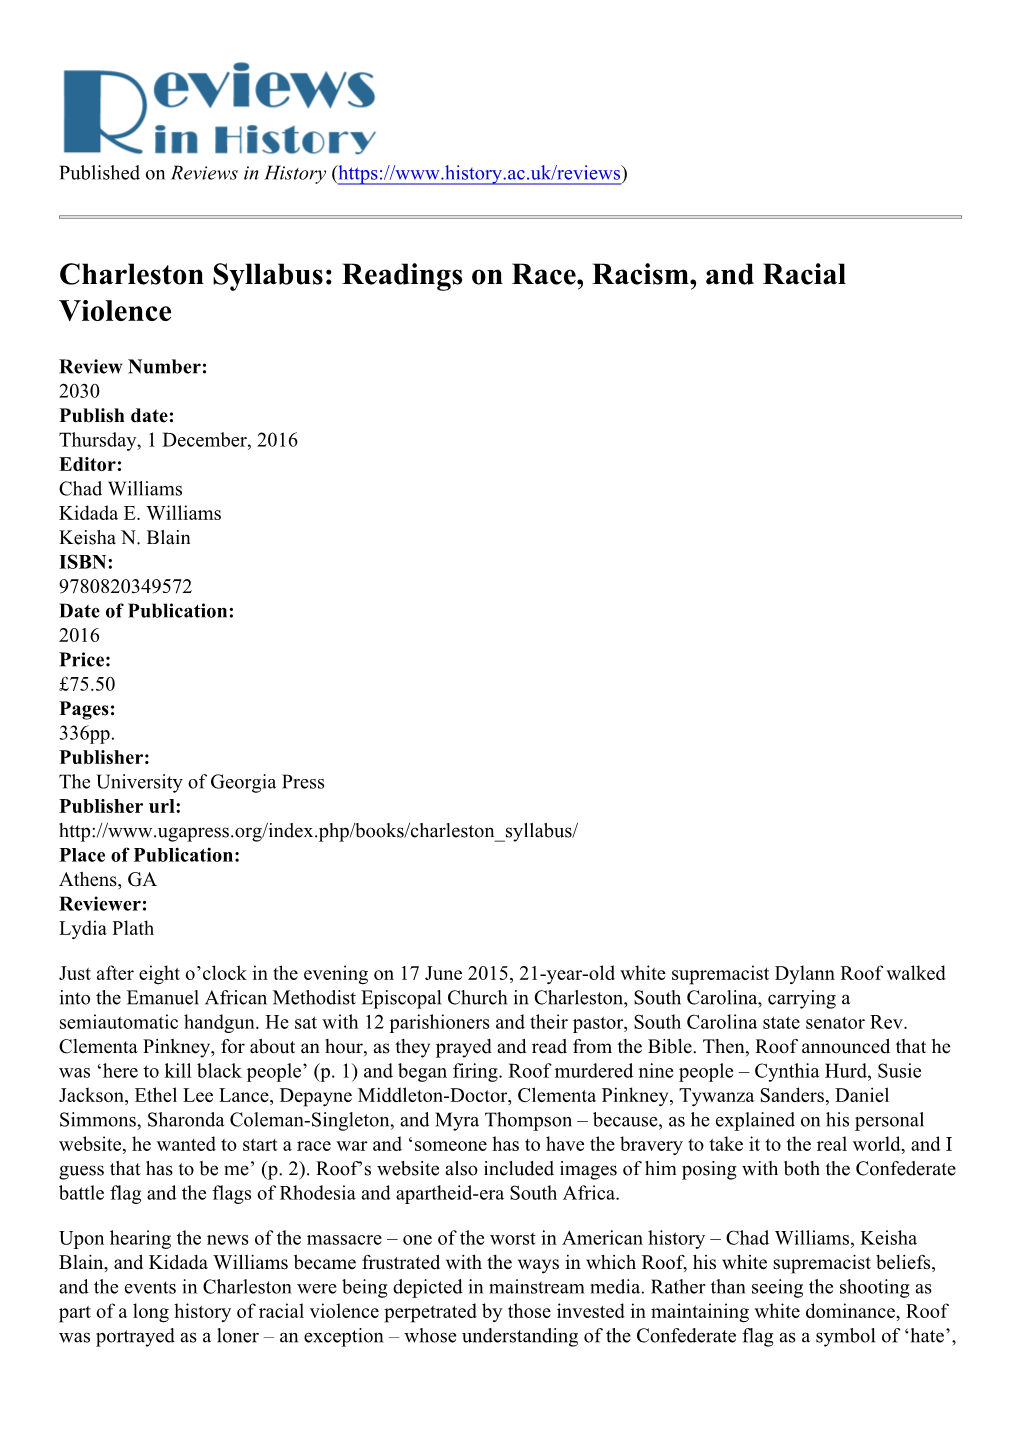 Charleston Syllabus: Readings on Race, Racism, and Racial Violence